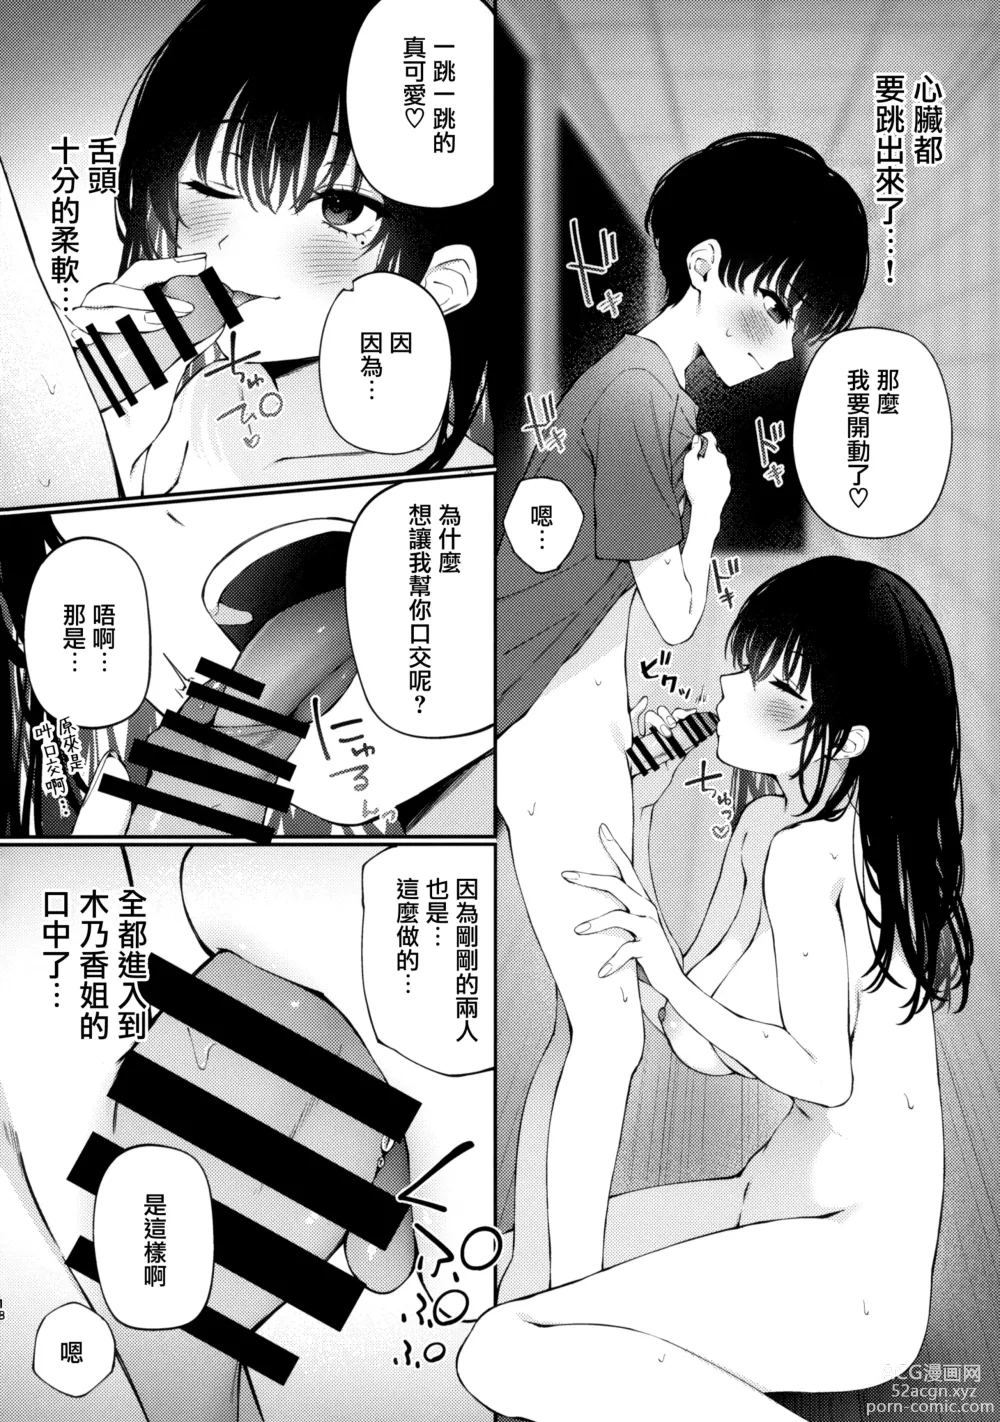 Page 18 of doujinshi Boku no Natsuyasumi no Omoide